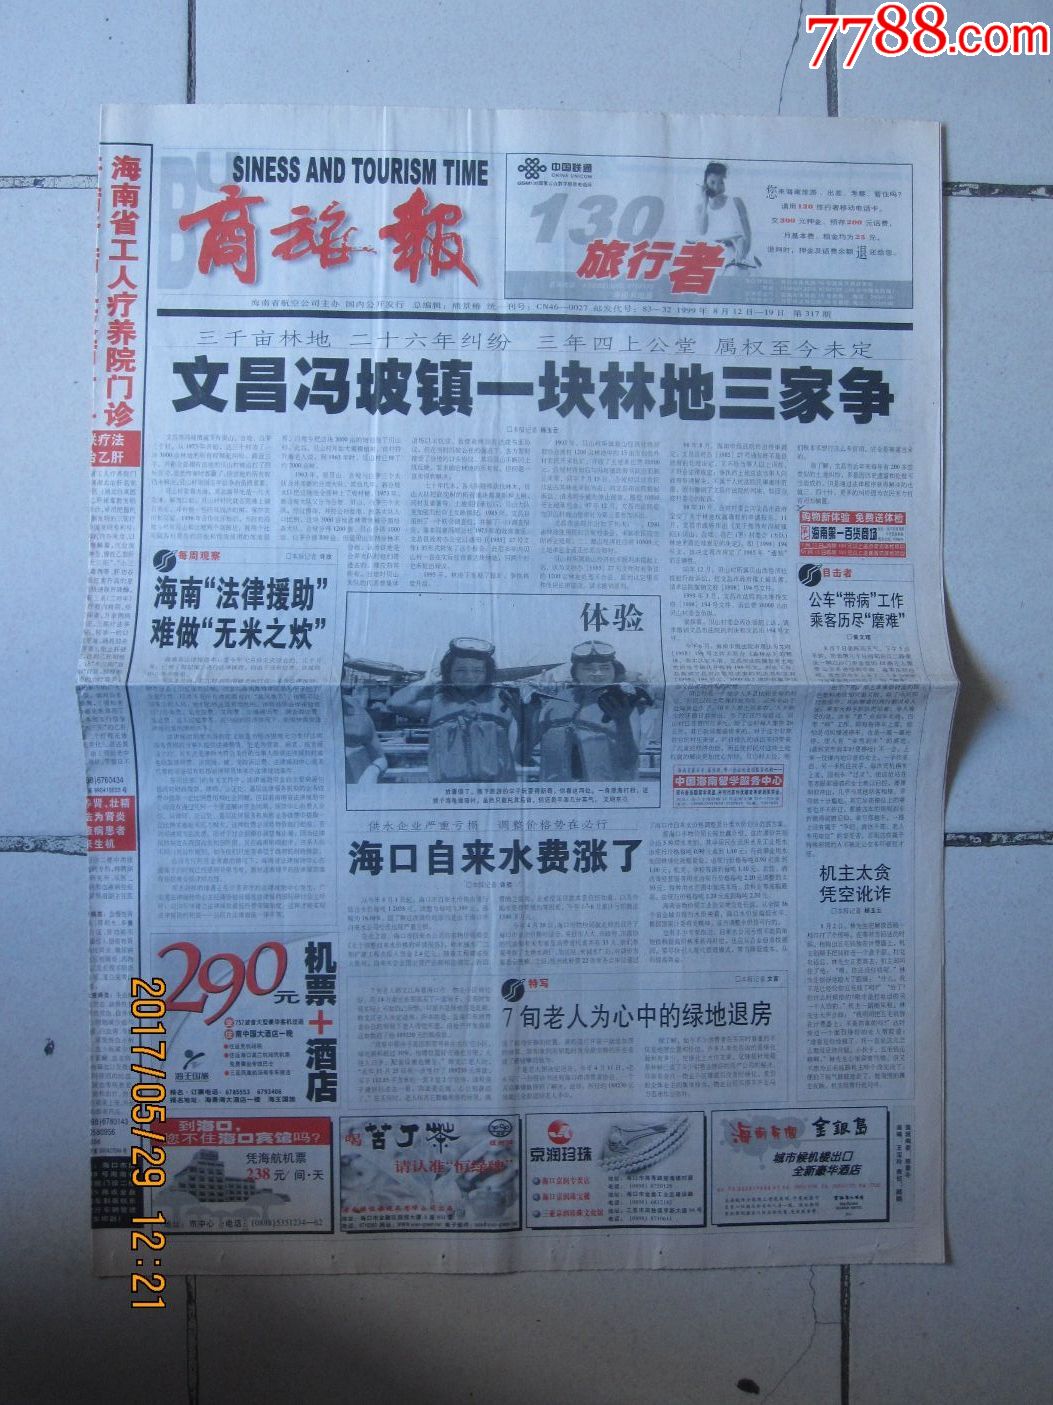 1999年8月12日《商旅报》(海南航空公司主办